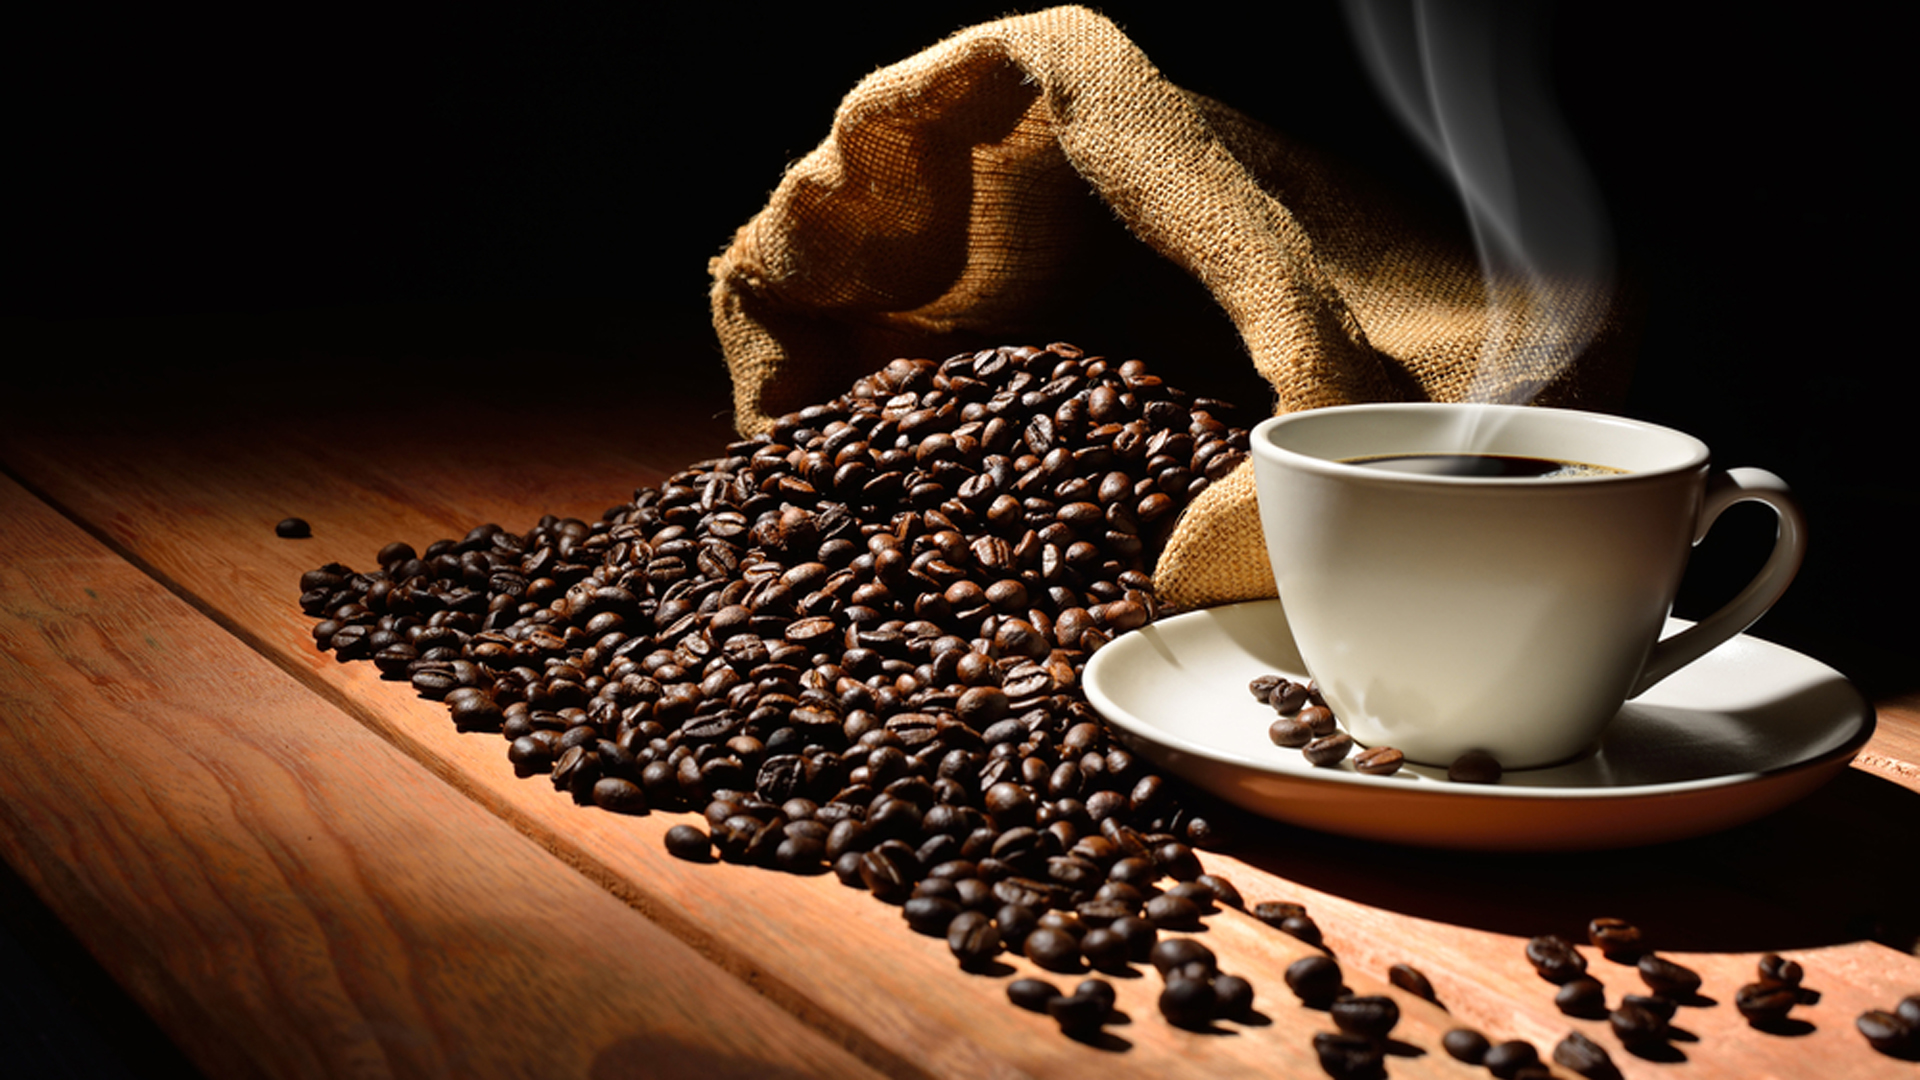 En nuestro país, se toma 1 kilo de café por año por persona  (Shutterstock)